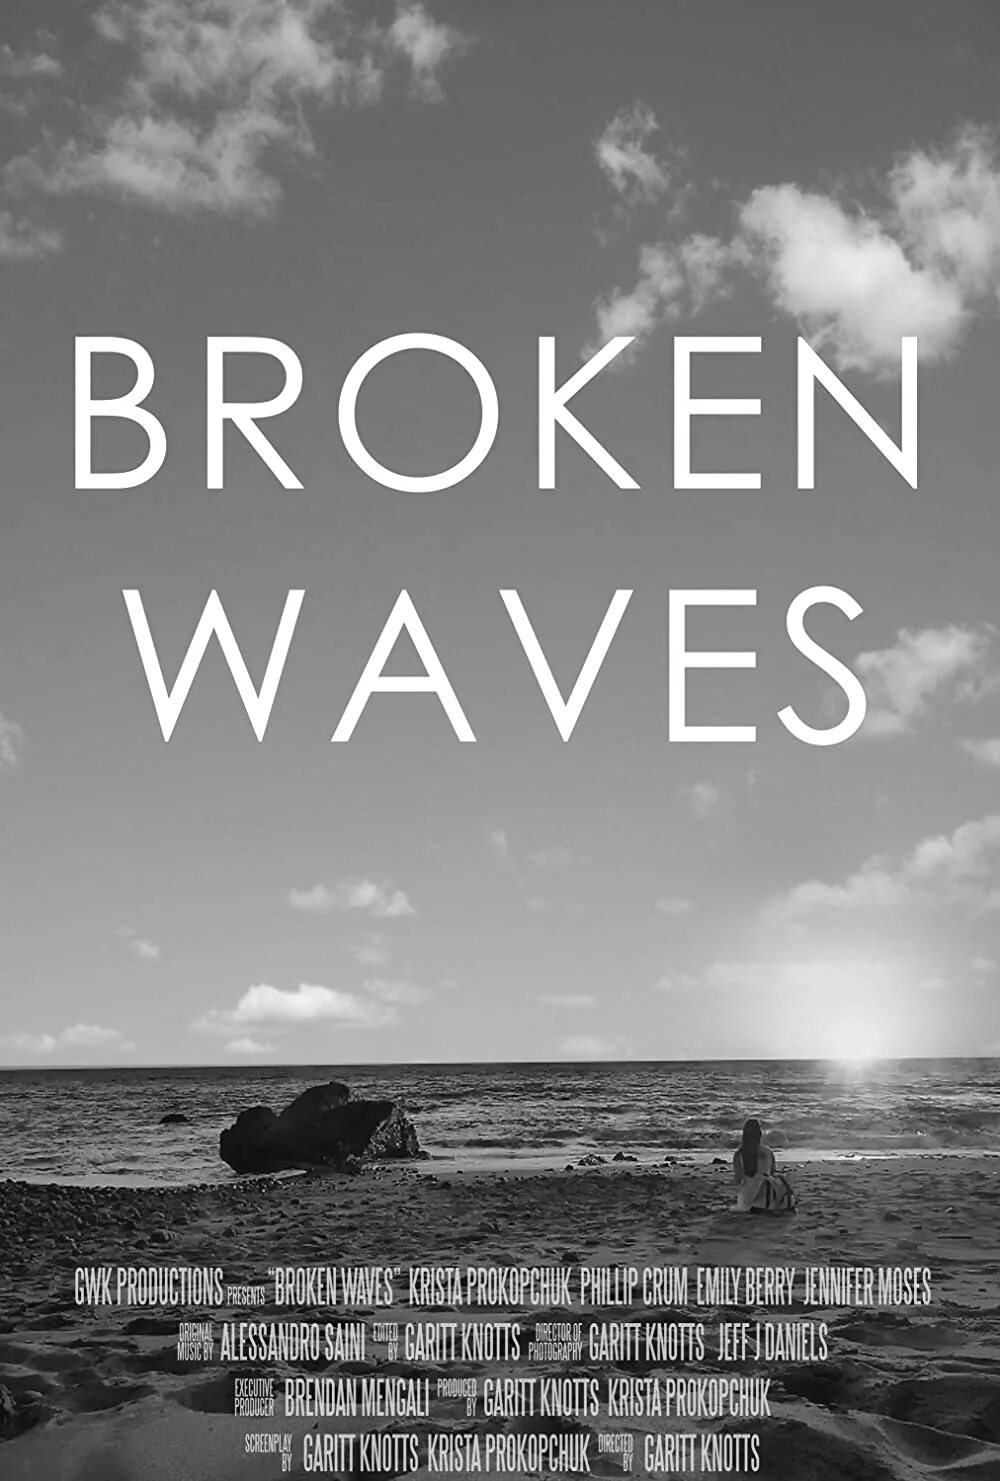 Broken waves